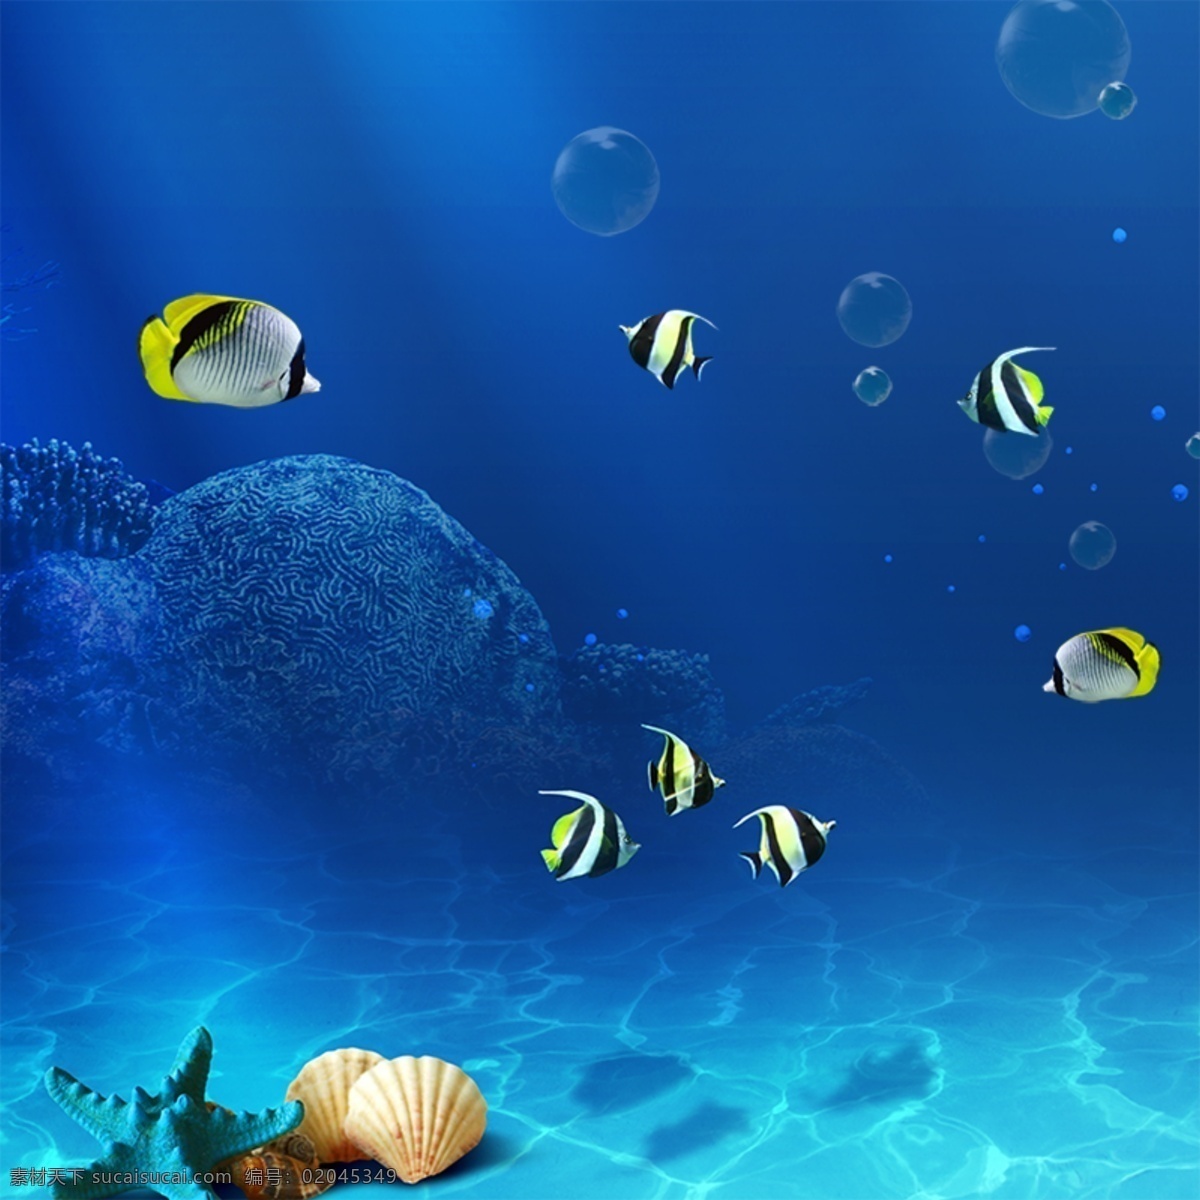 海底背景主图 海洋 鱼 海底世界 贝壳 化妆品背景 海底背景 蓝色